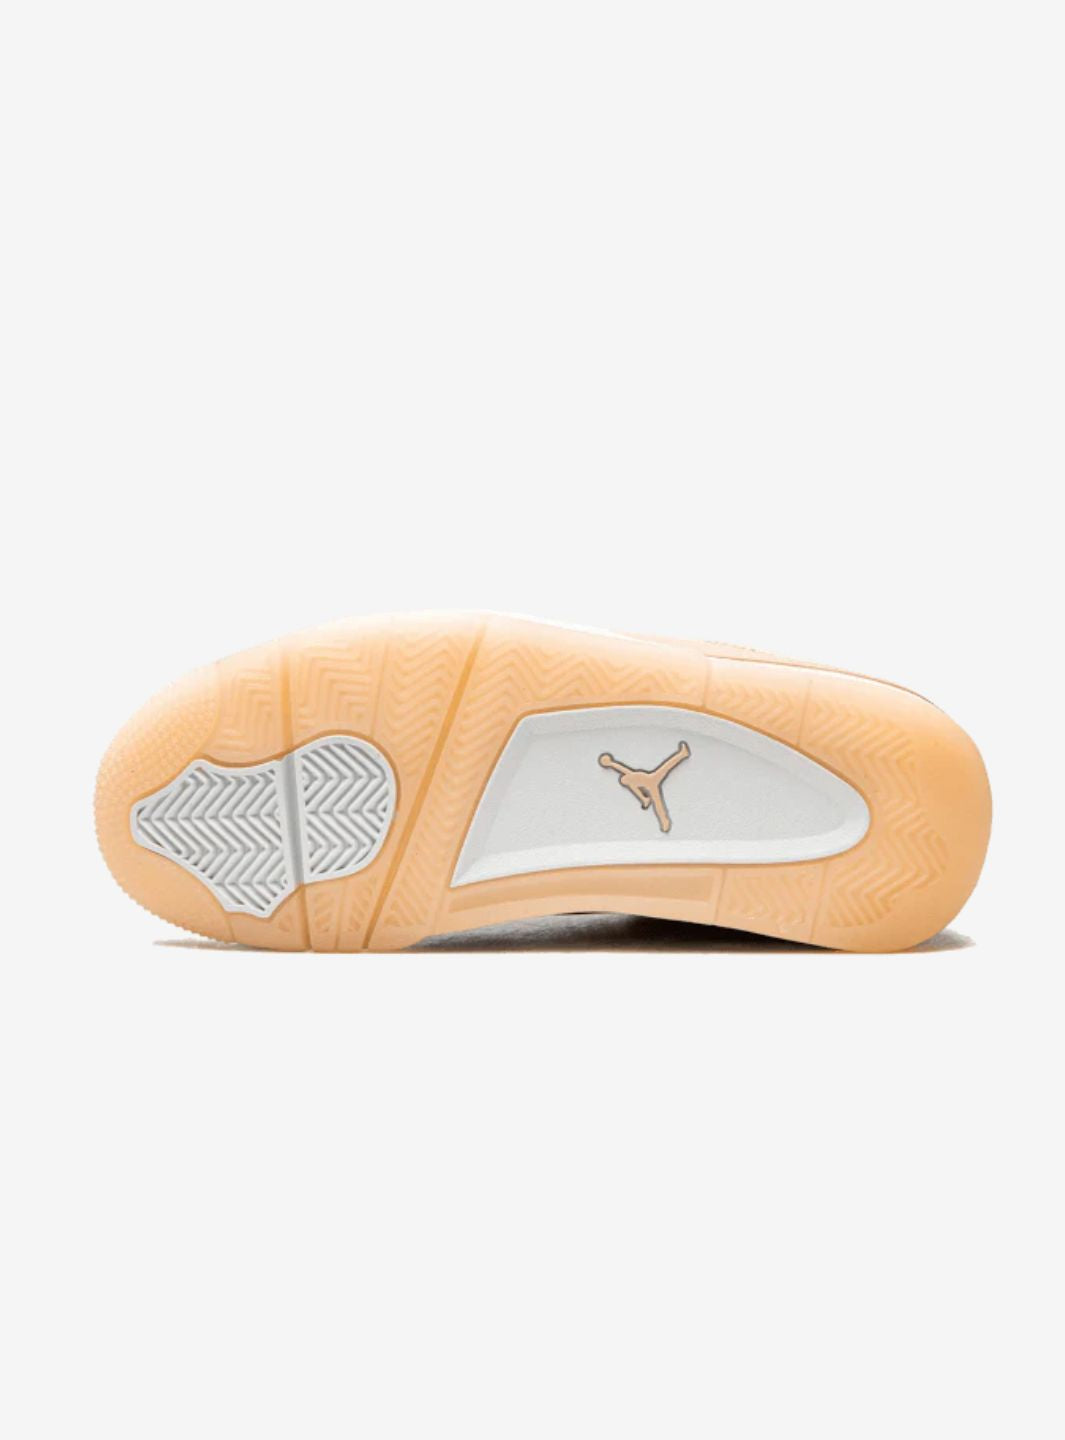 Air Jordan 4 Shimmer - DJ0675-200 | ResellZone